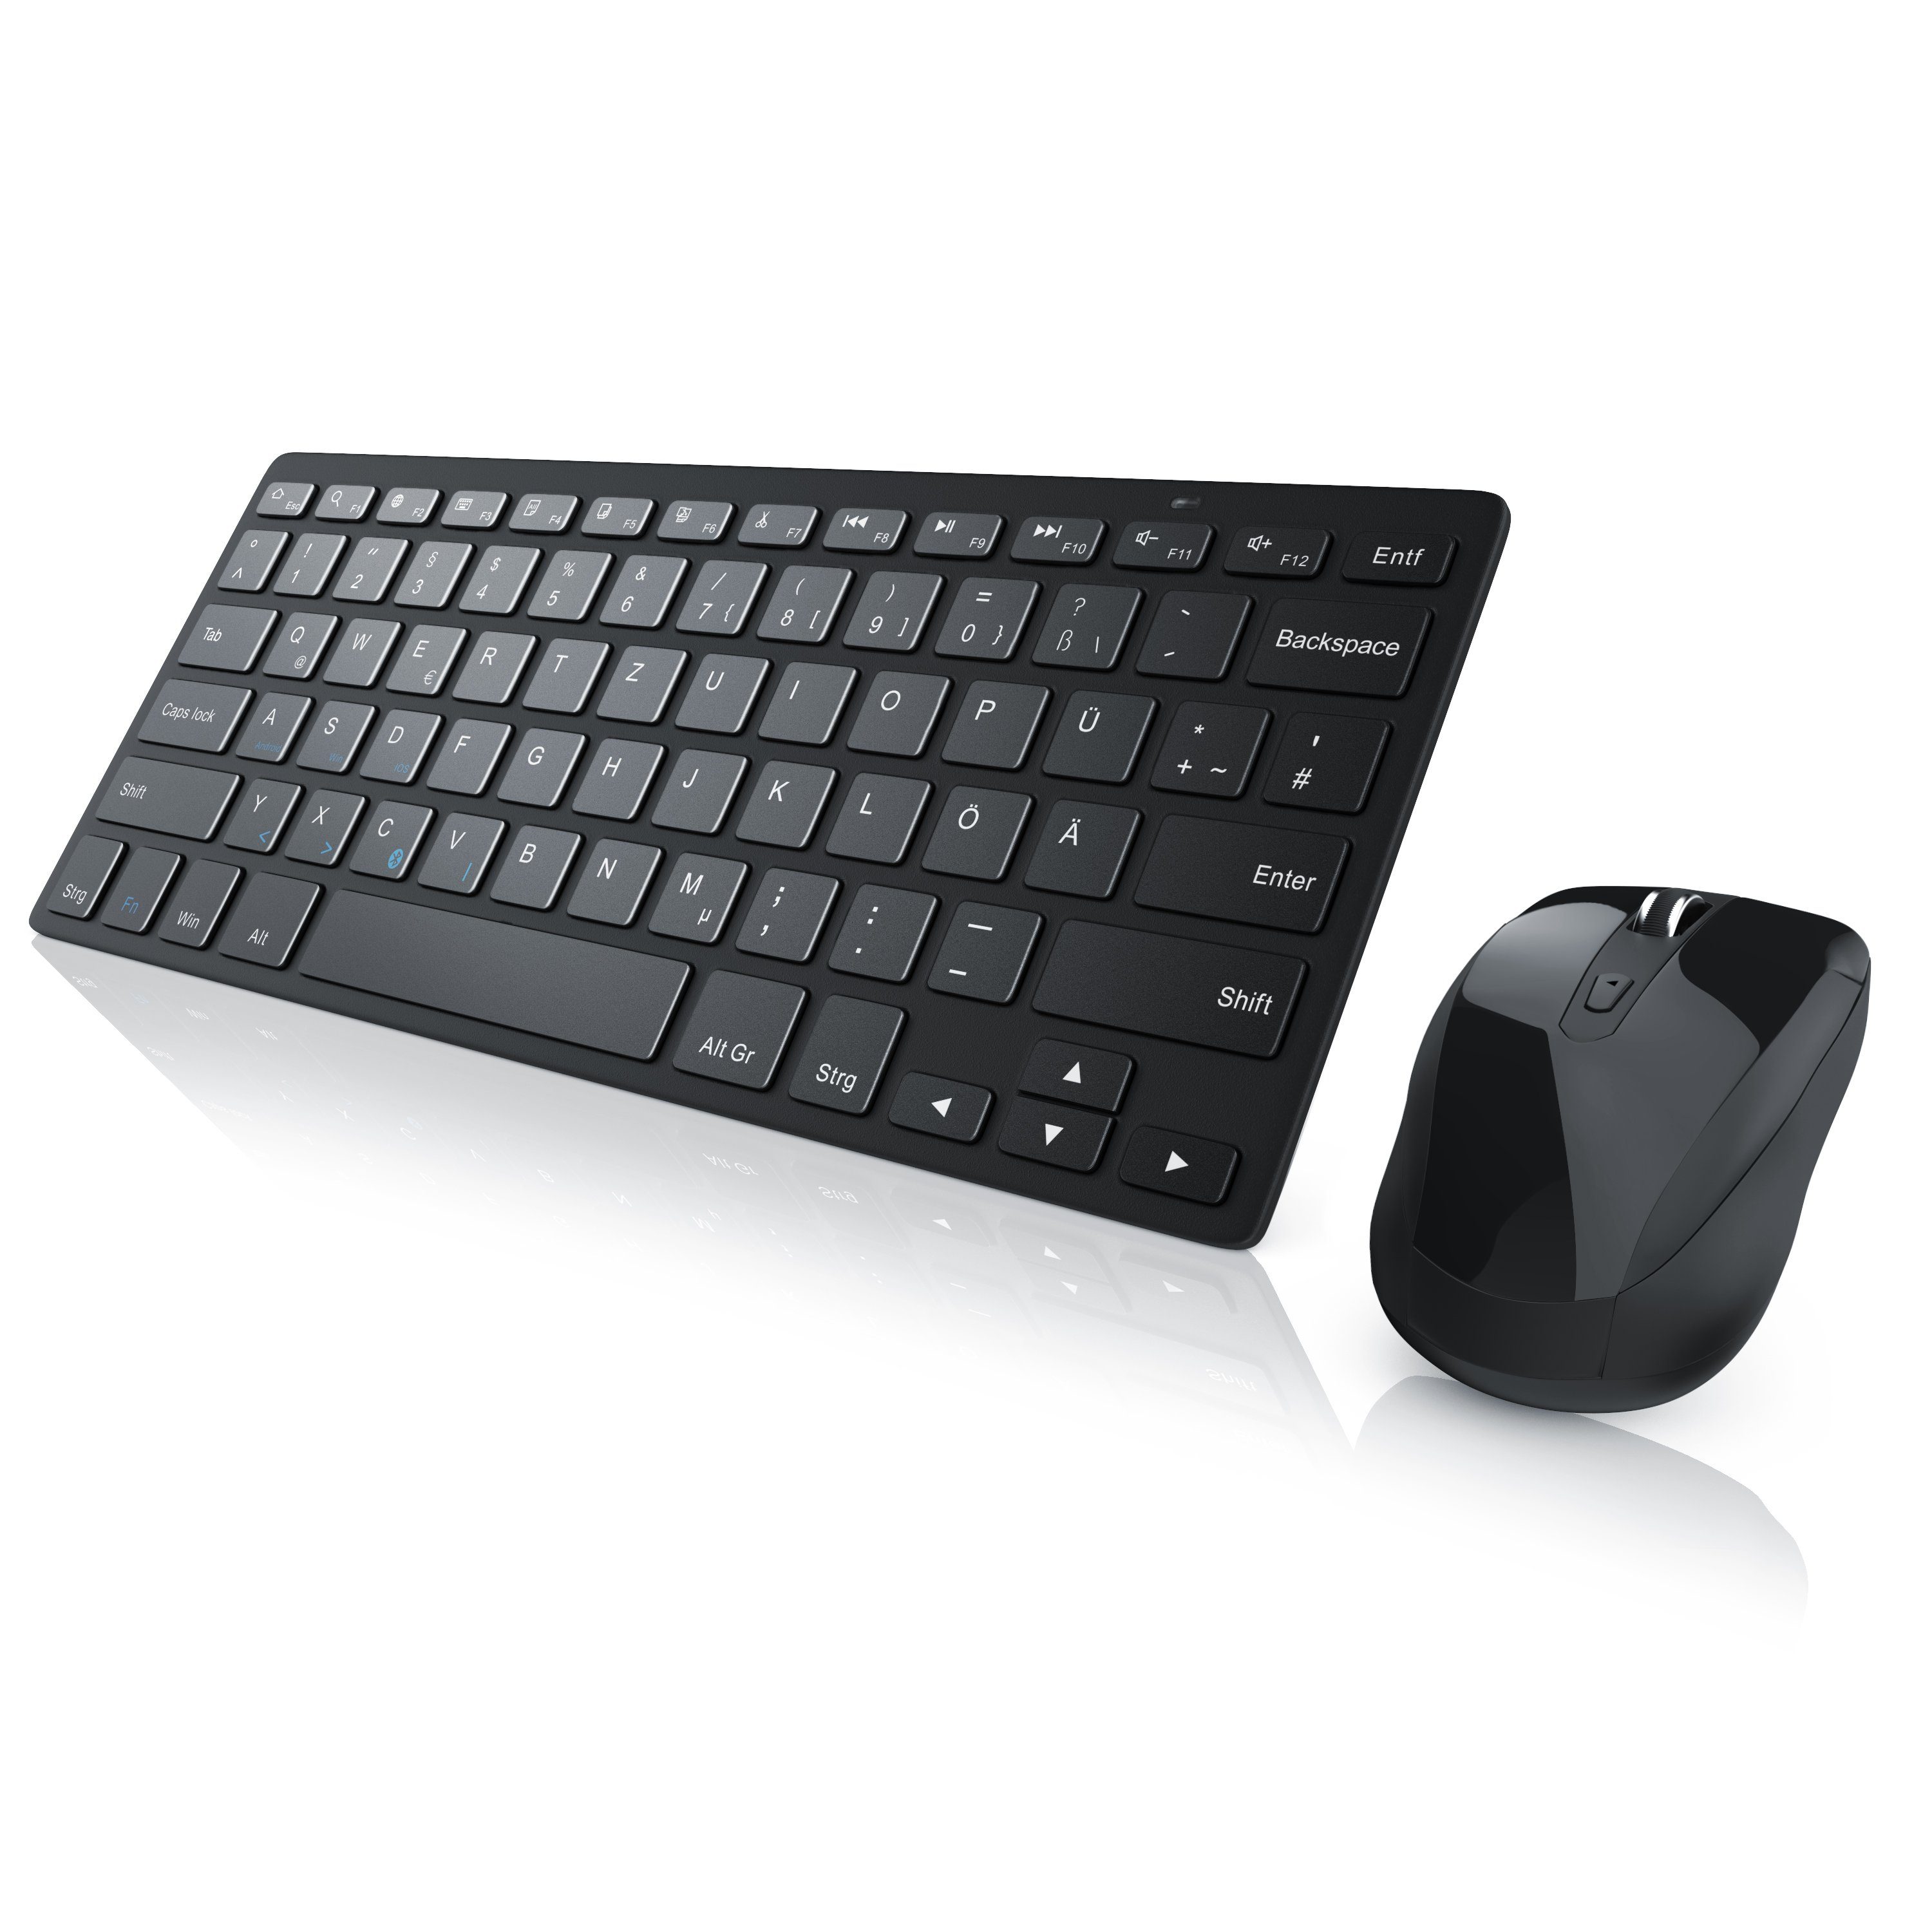 Aplic Tastatur- und Maus-Set, Wireless Bluetooth Tastatur + Notebook Maus  Set geeignet für PC, Smartphone, Tablet u.v.m online kaufen | OTTO